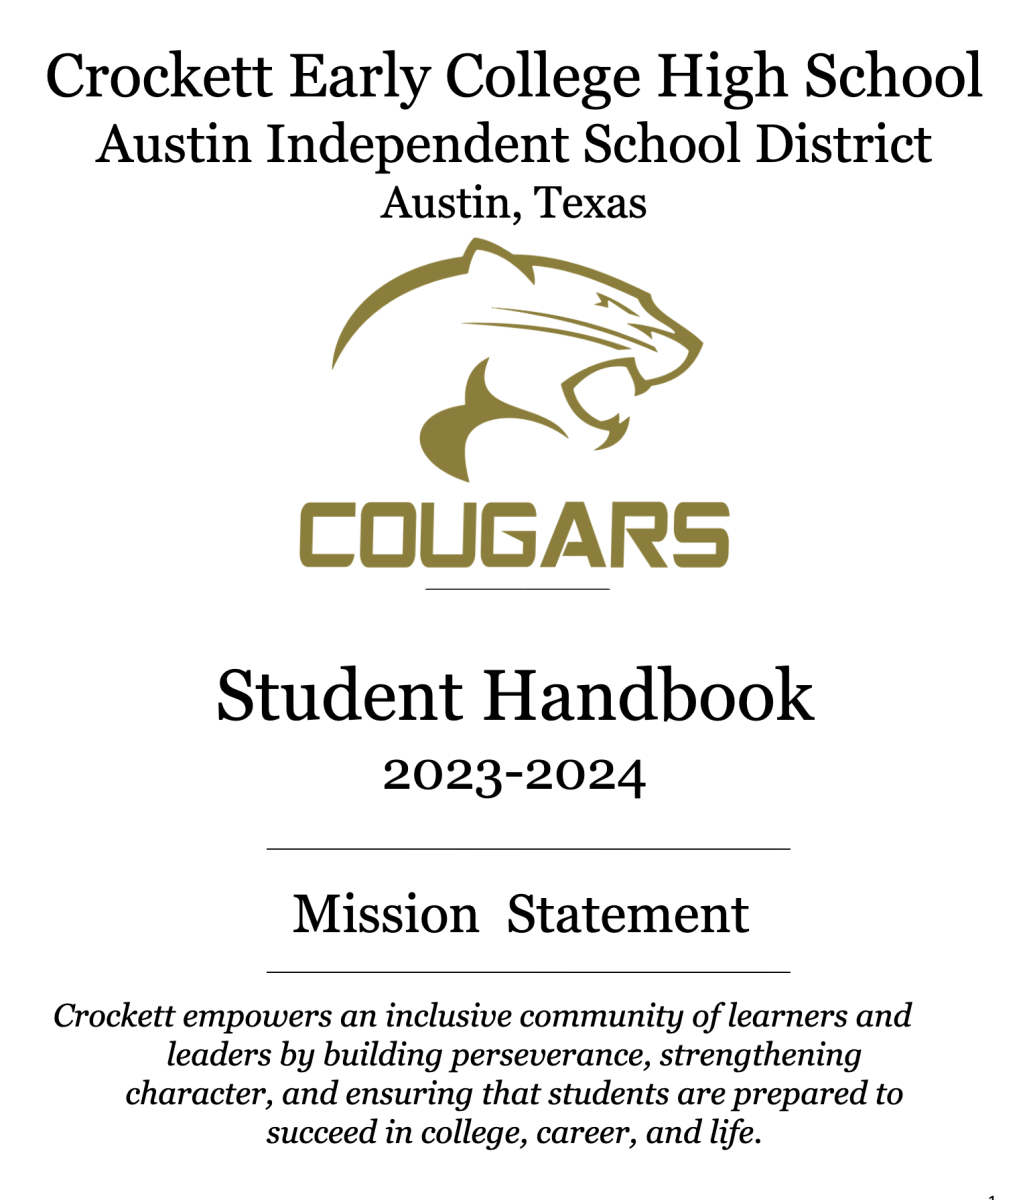 Crockett ECHS Student Handbook